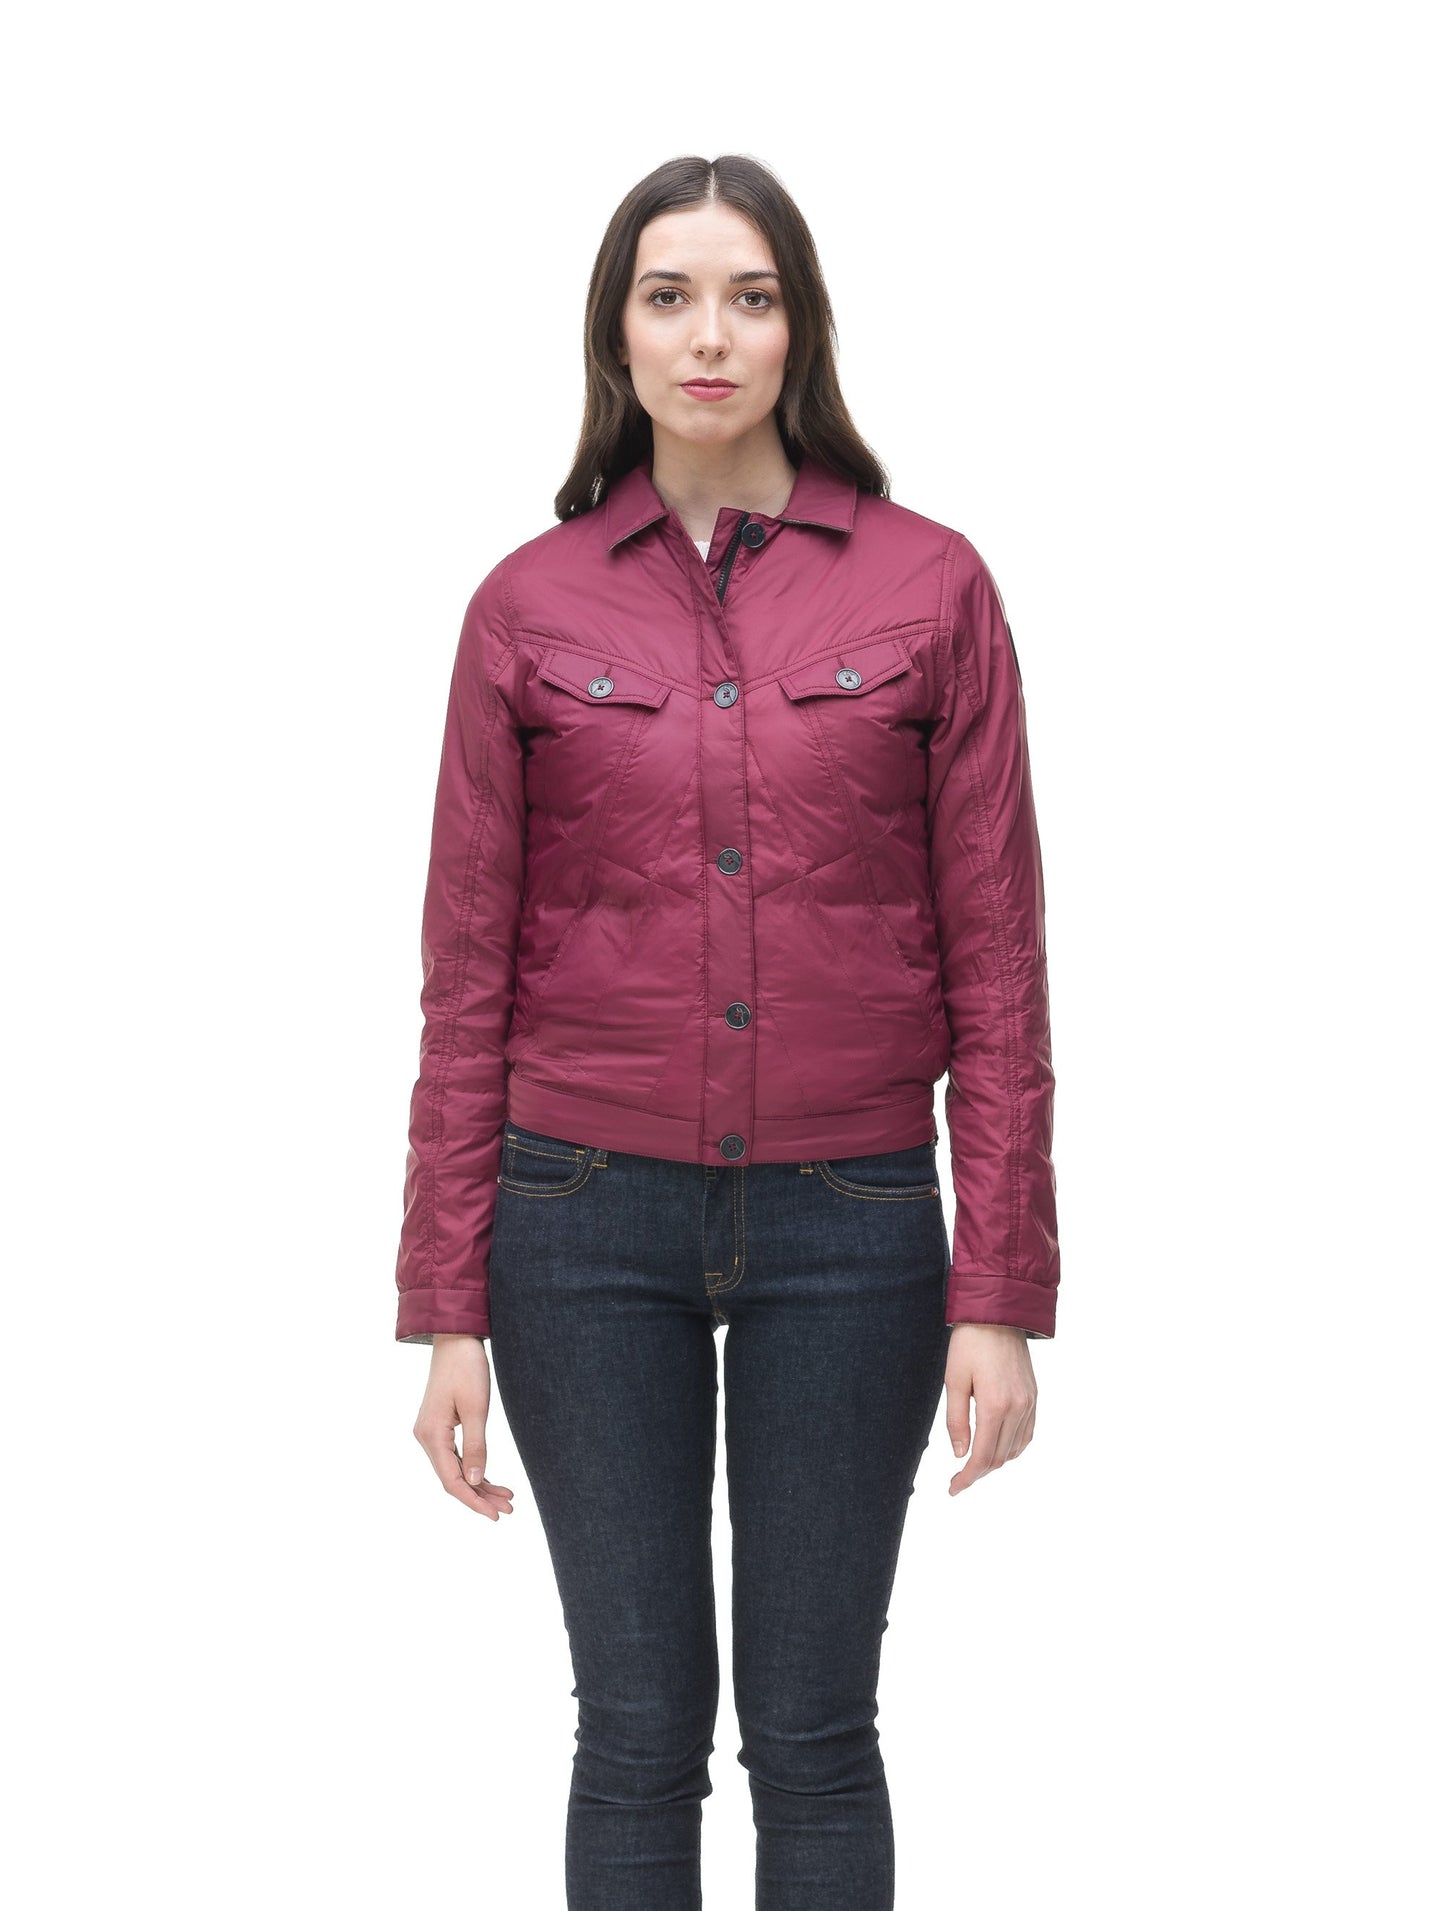 Lightweight cropped women's jacket in Berry